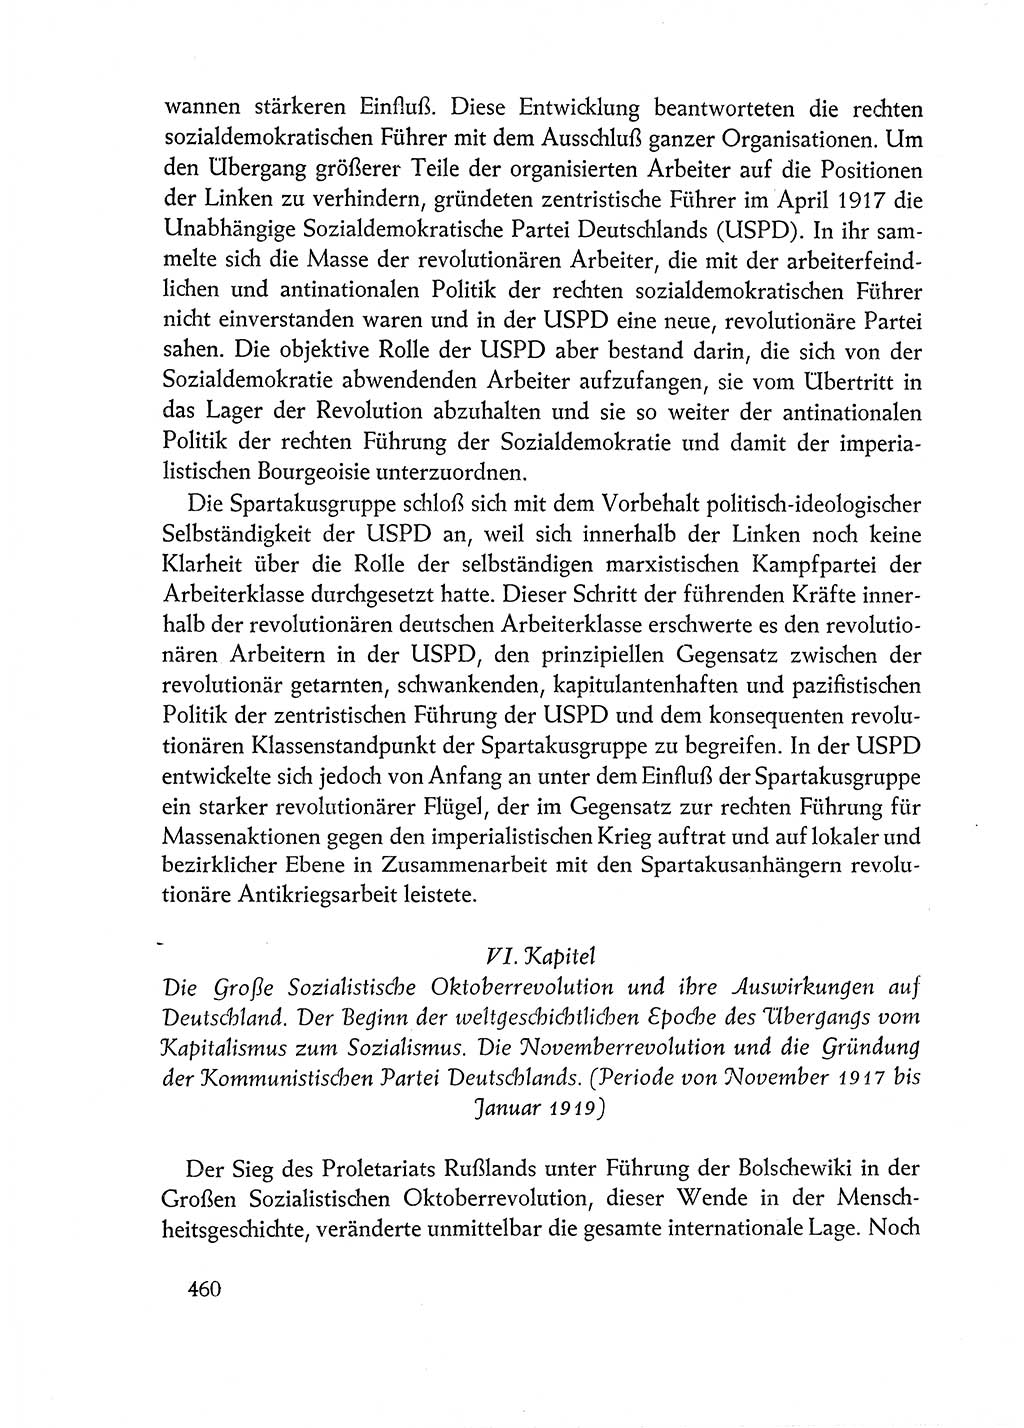 Dokumente der Sozialistischen Einheitspartei Deutschlands (SED) [Deutsche Demokratische Republik (DDR)] 1962-1963, Seite 460 (Dok. SED DDR 1962-1963, S. 460)